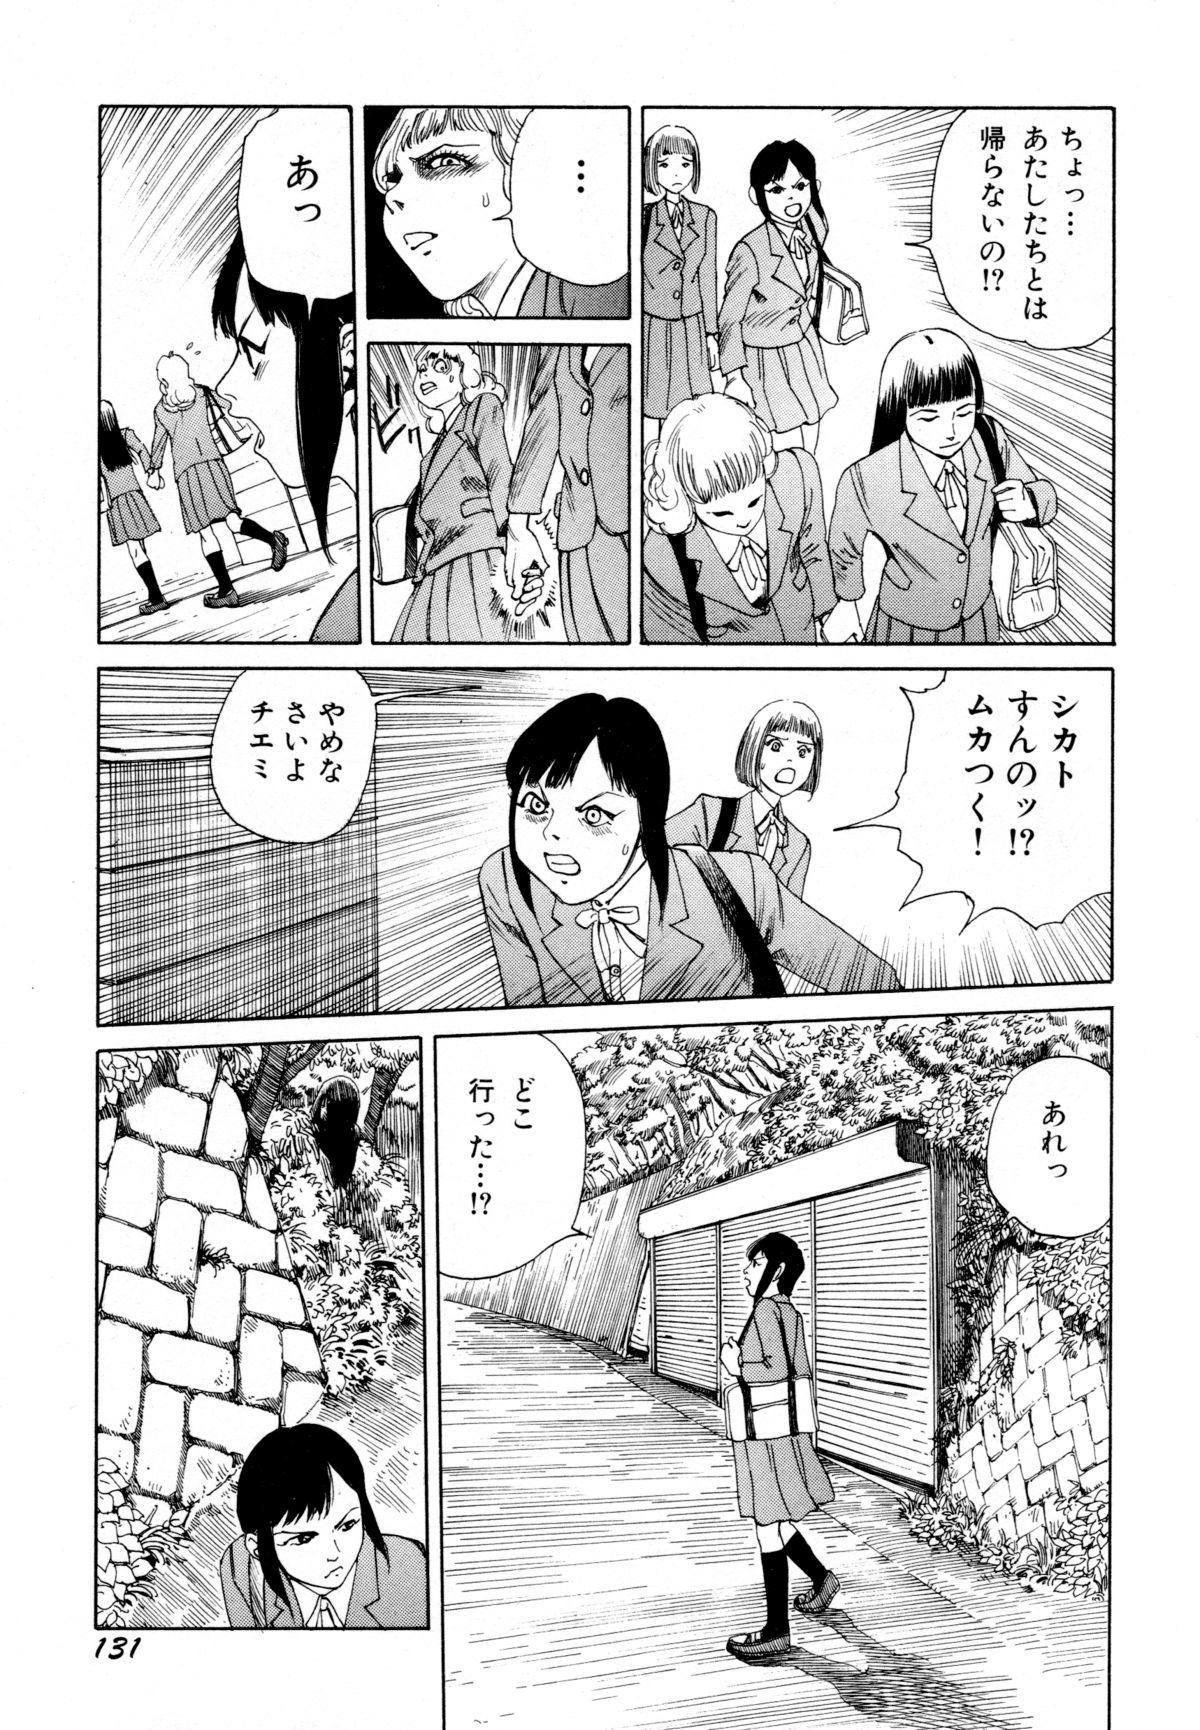 Arijigoku vs Barabara Shoujo - Antlion vs BaraBara Girl 132